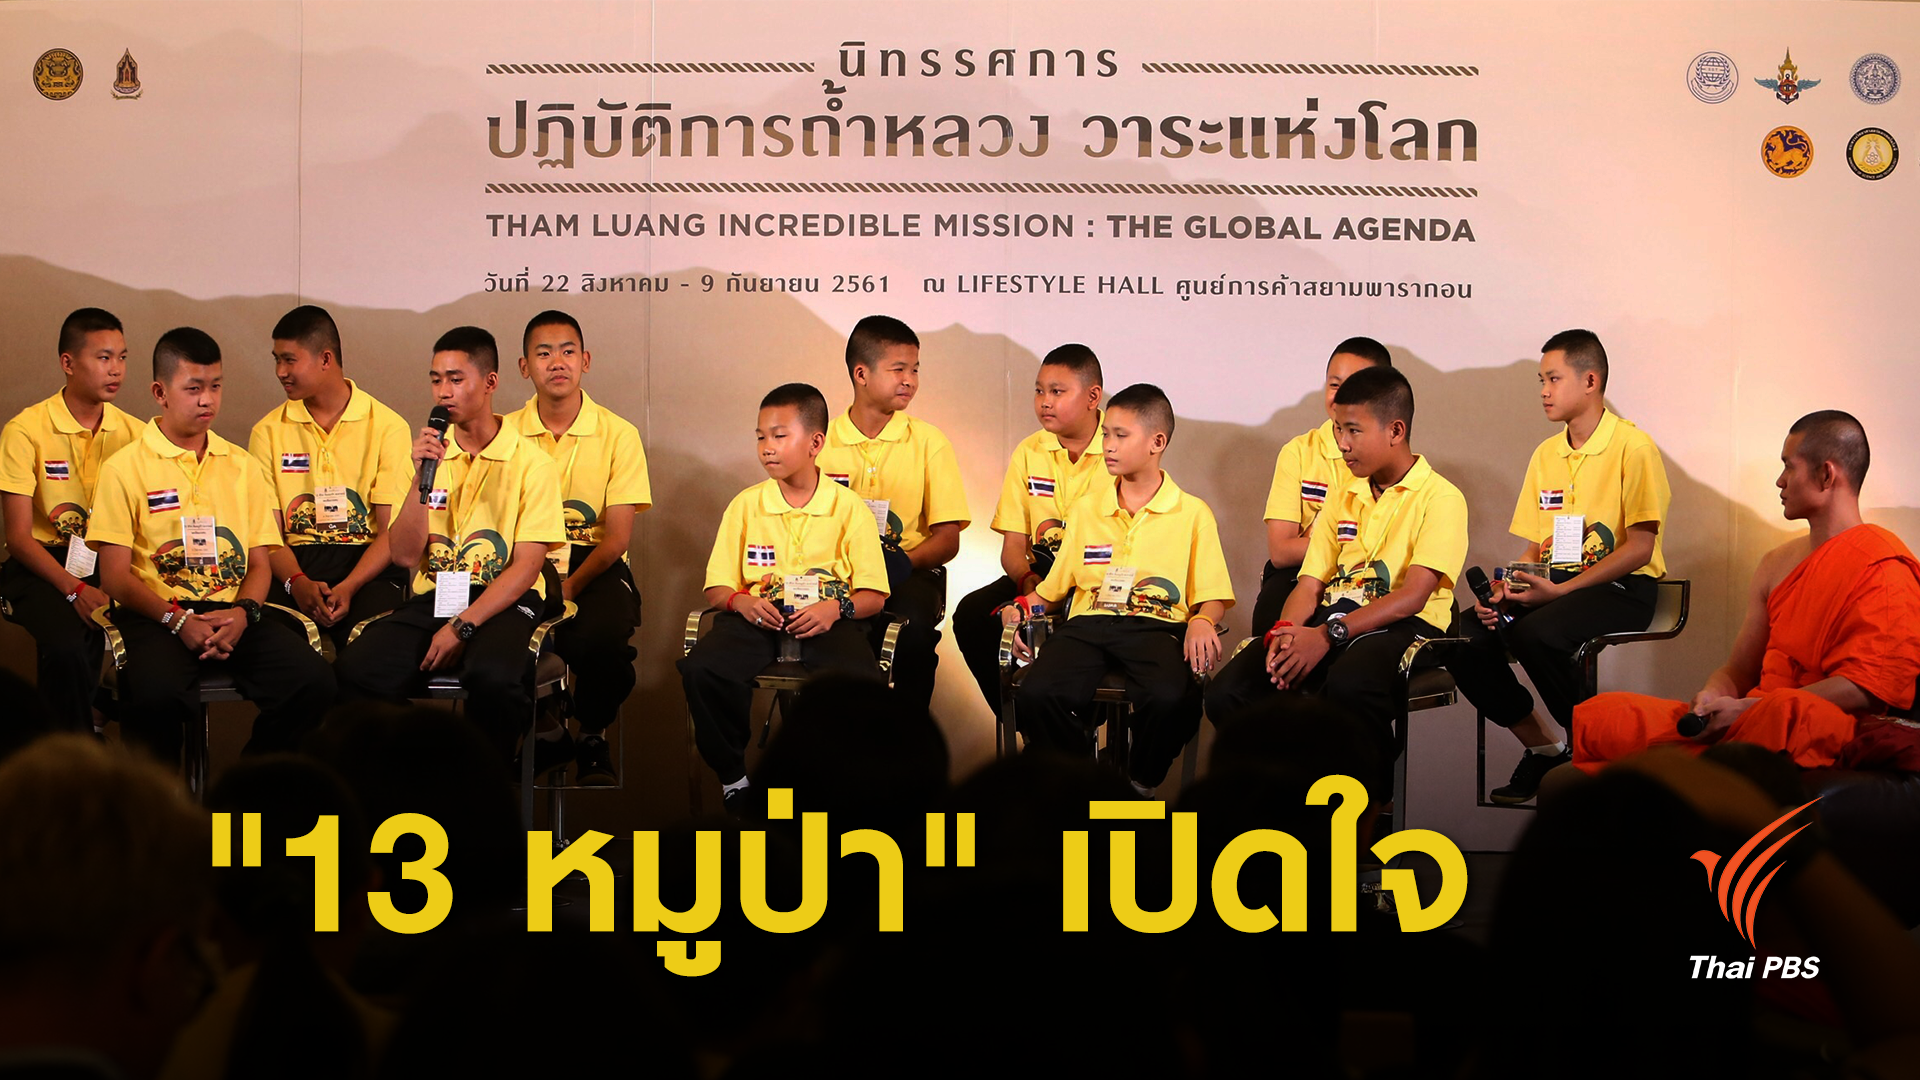 เปิดใจทีมหมูป่า มุ่ง "พาไทย" ไปบอลโลก